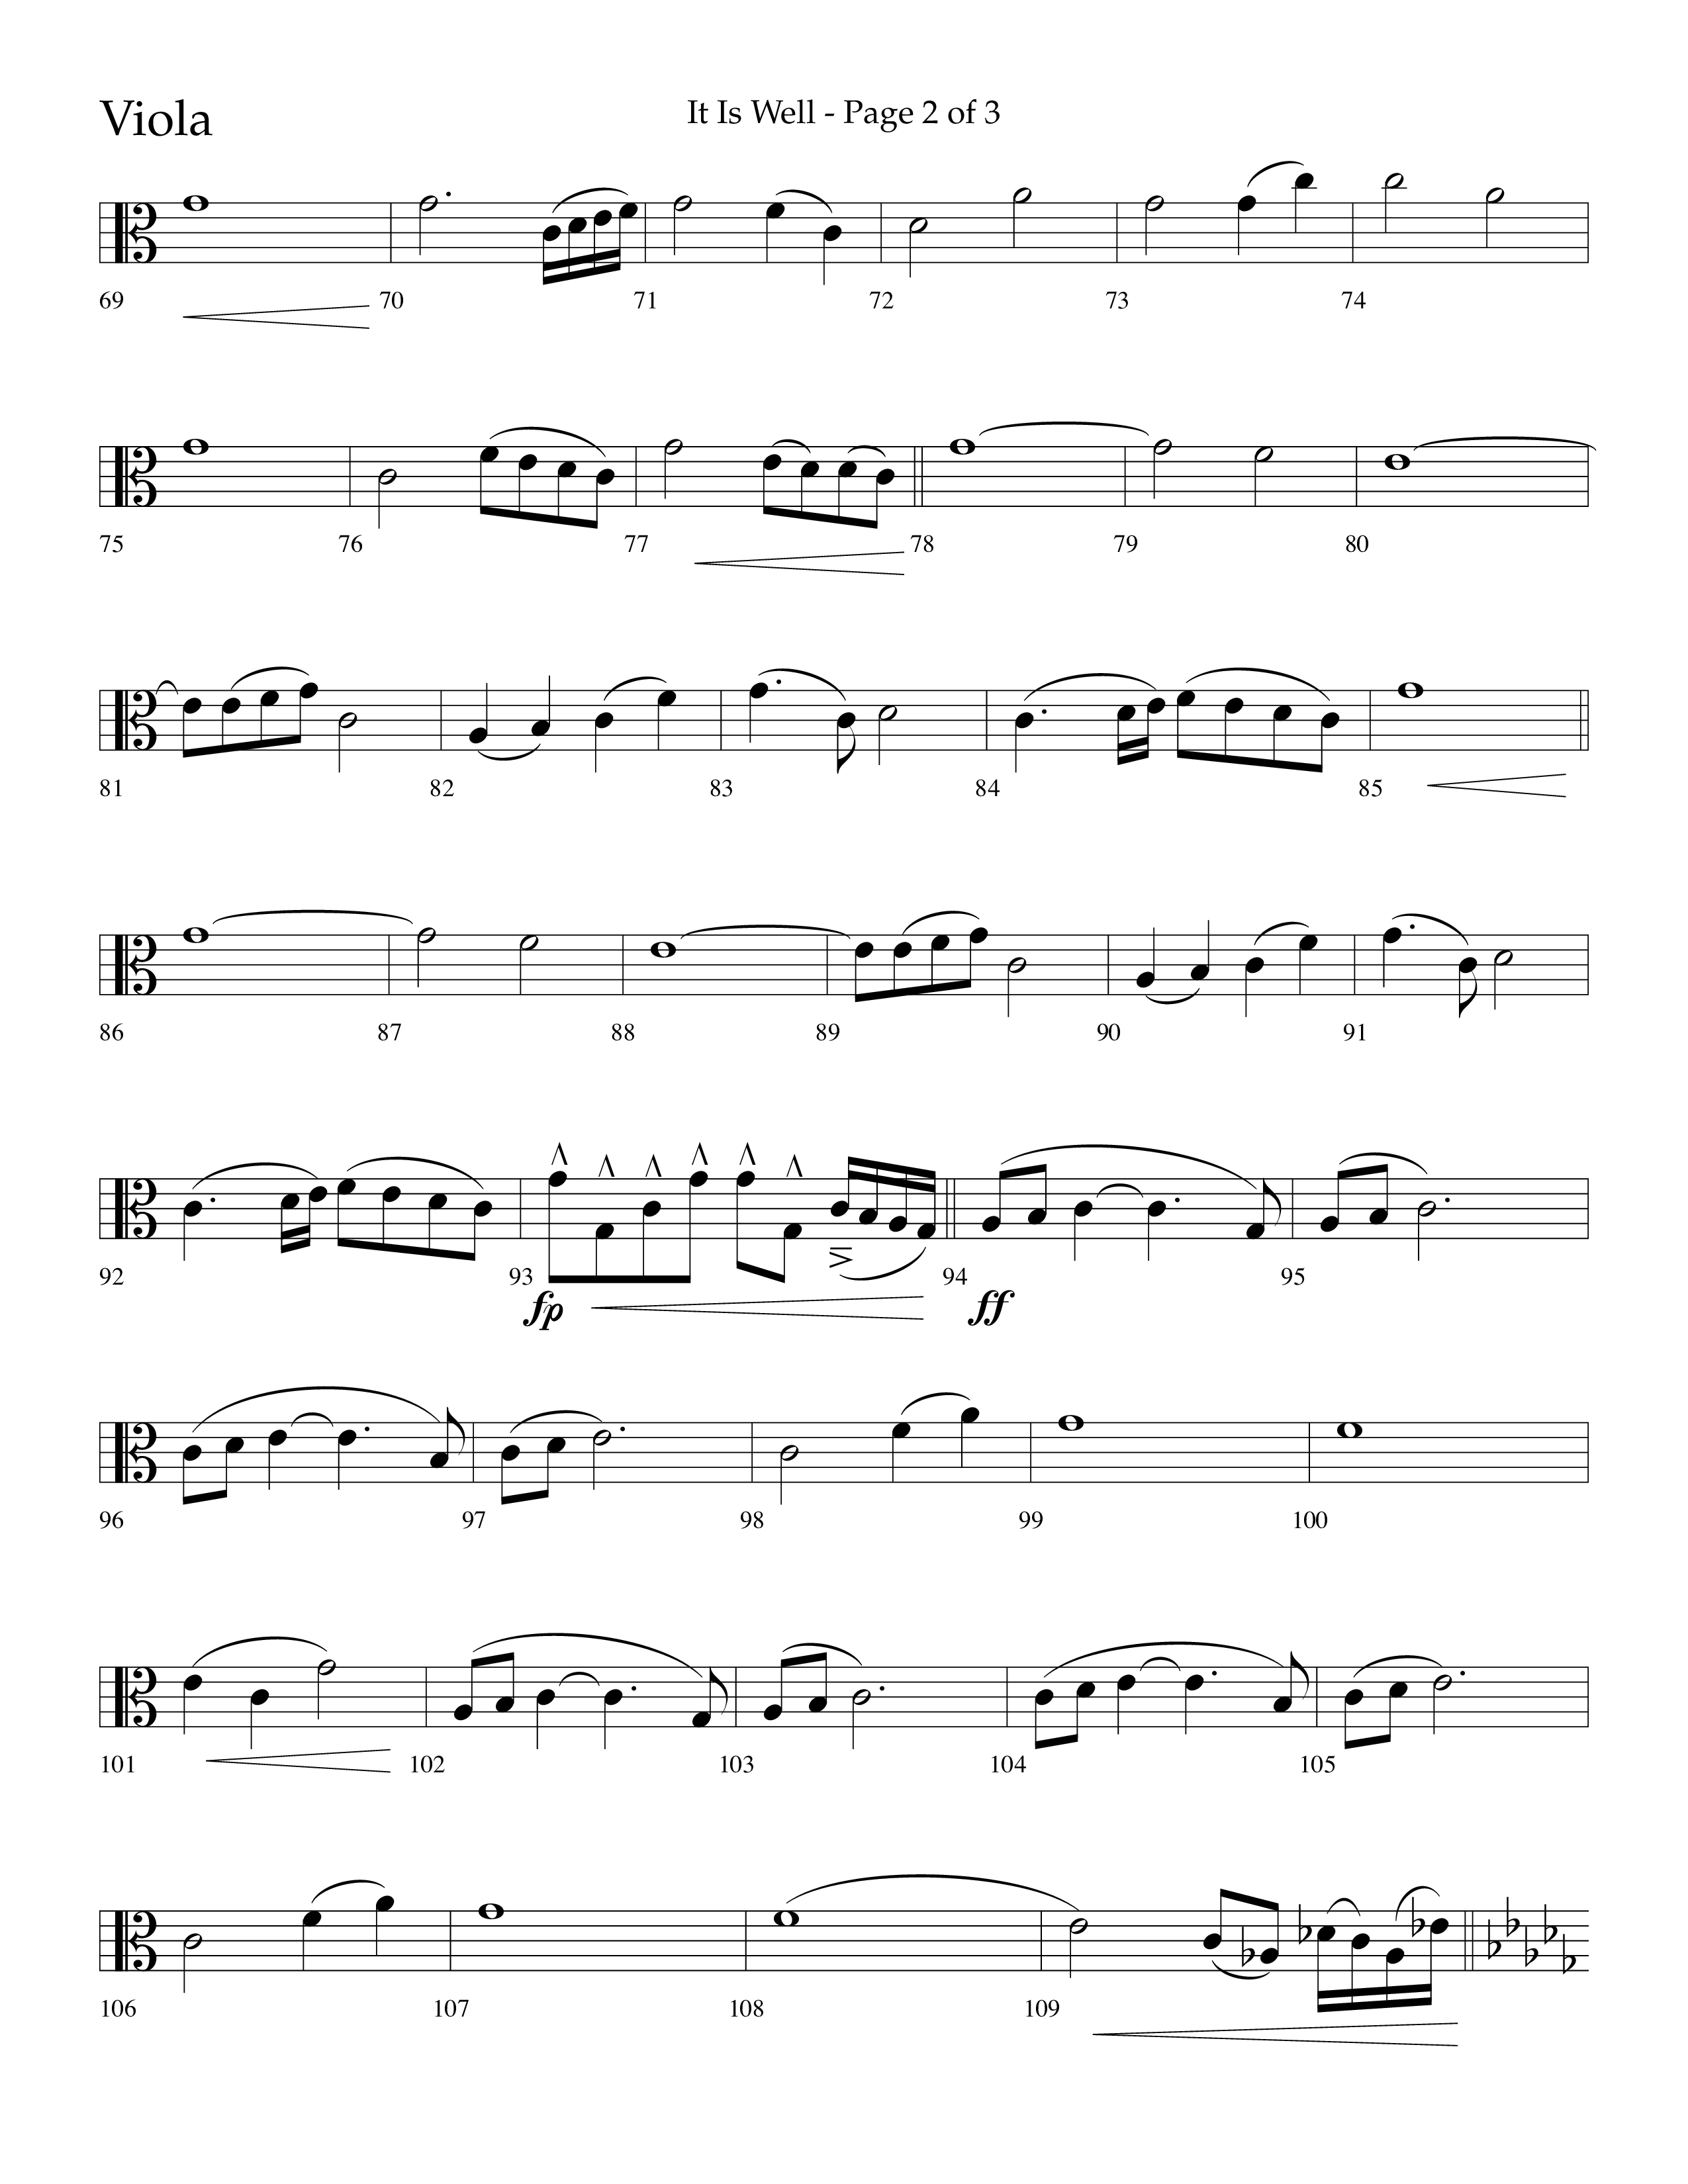 It Is Well (Choral Anthem SATB) Viola (Lifeway Choral / Arr. Cliff Duren)